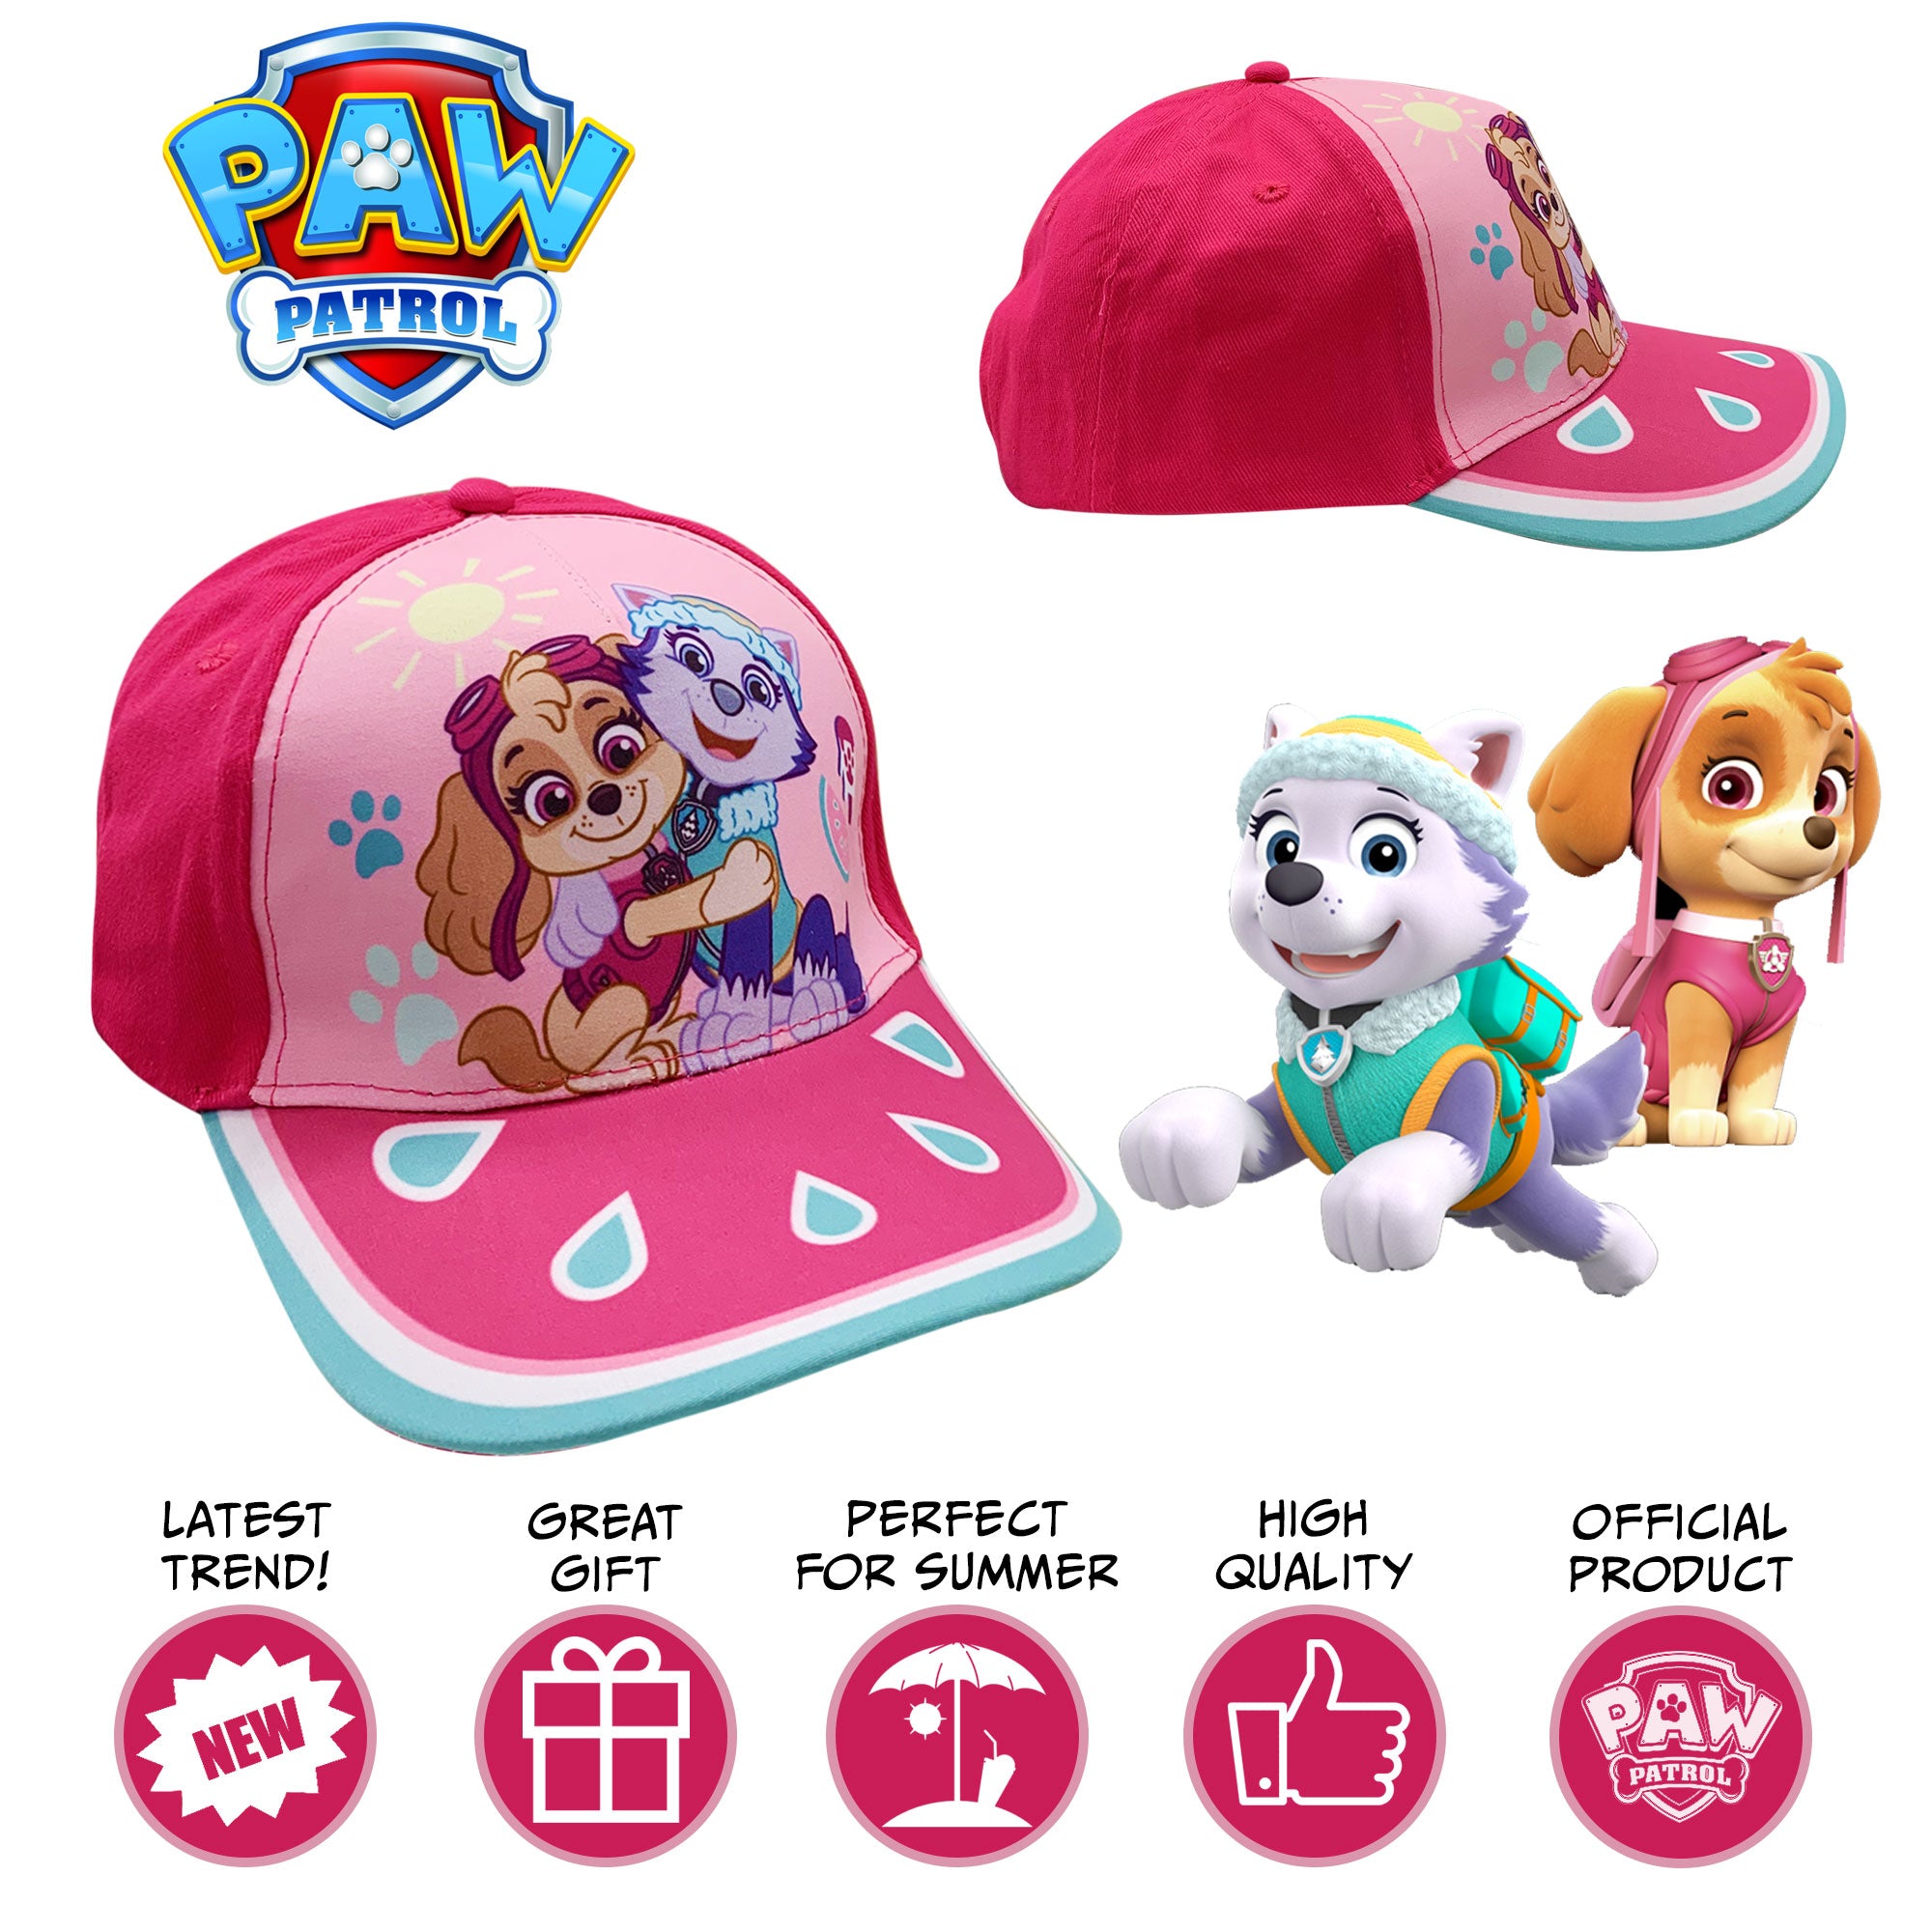 Cappellino per bambina Nickelodeon Paw Patrol berretto baseball bimba 6175